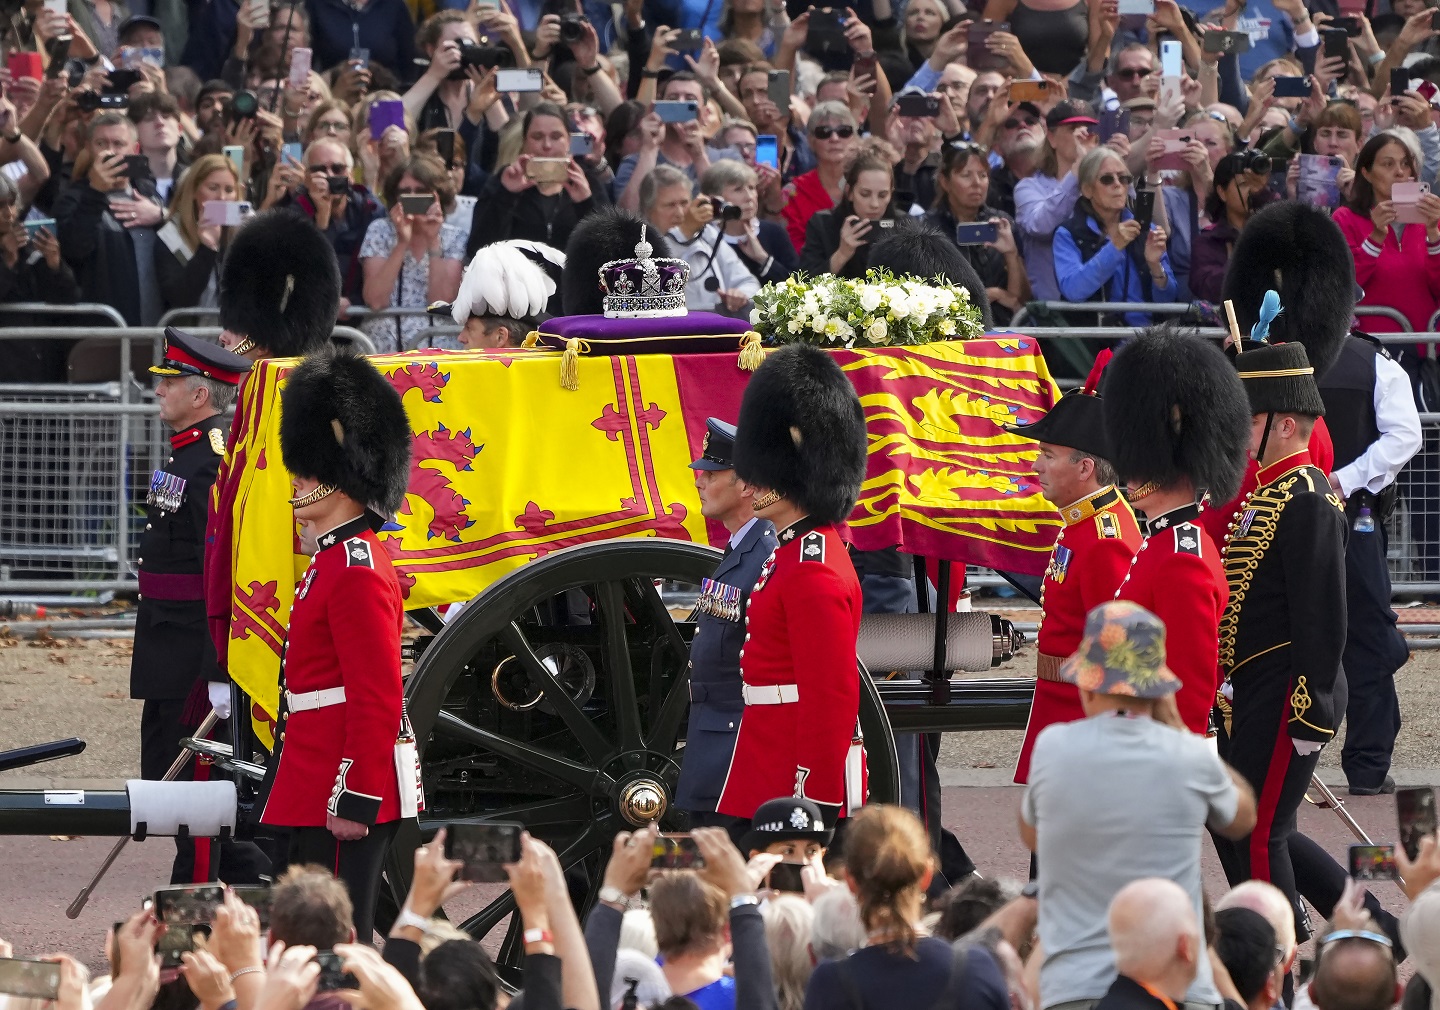 Des milliers de personnes bordent les rues alors que le cercueil de la reine Elizabeth quitte le palais de Buckingham, suivis du roi Charles lll et des membres de la famille royale alors qu'ils se dirigent vers Westminster Hall où la reine sera en état à Londres le mercredi 14 septembre 2022.